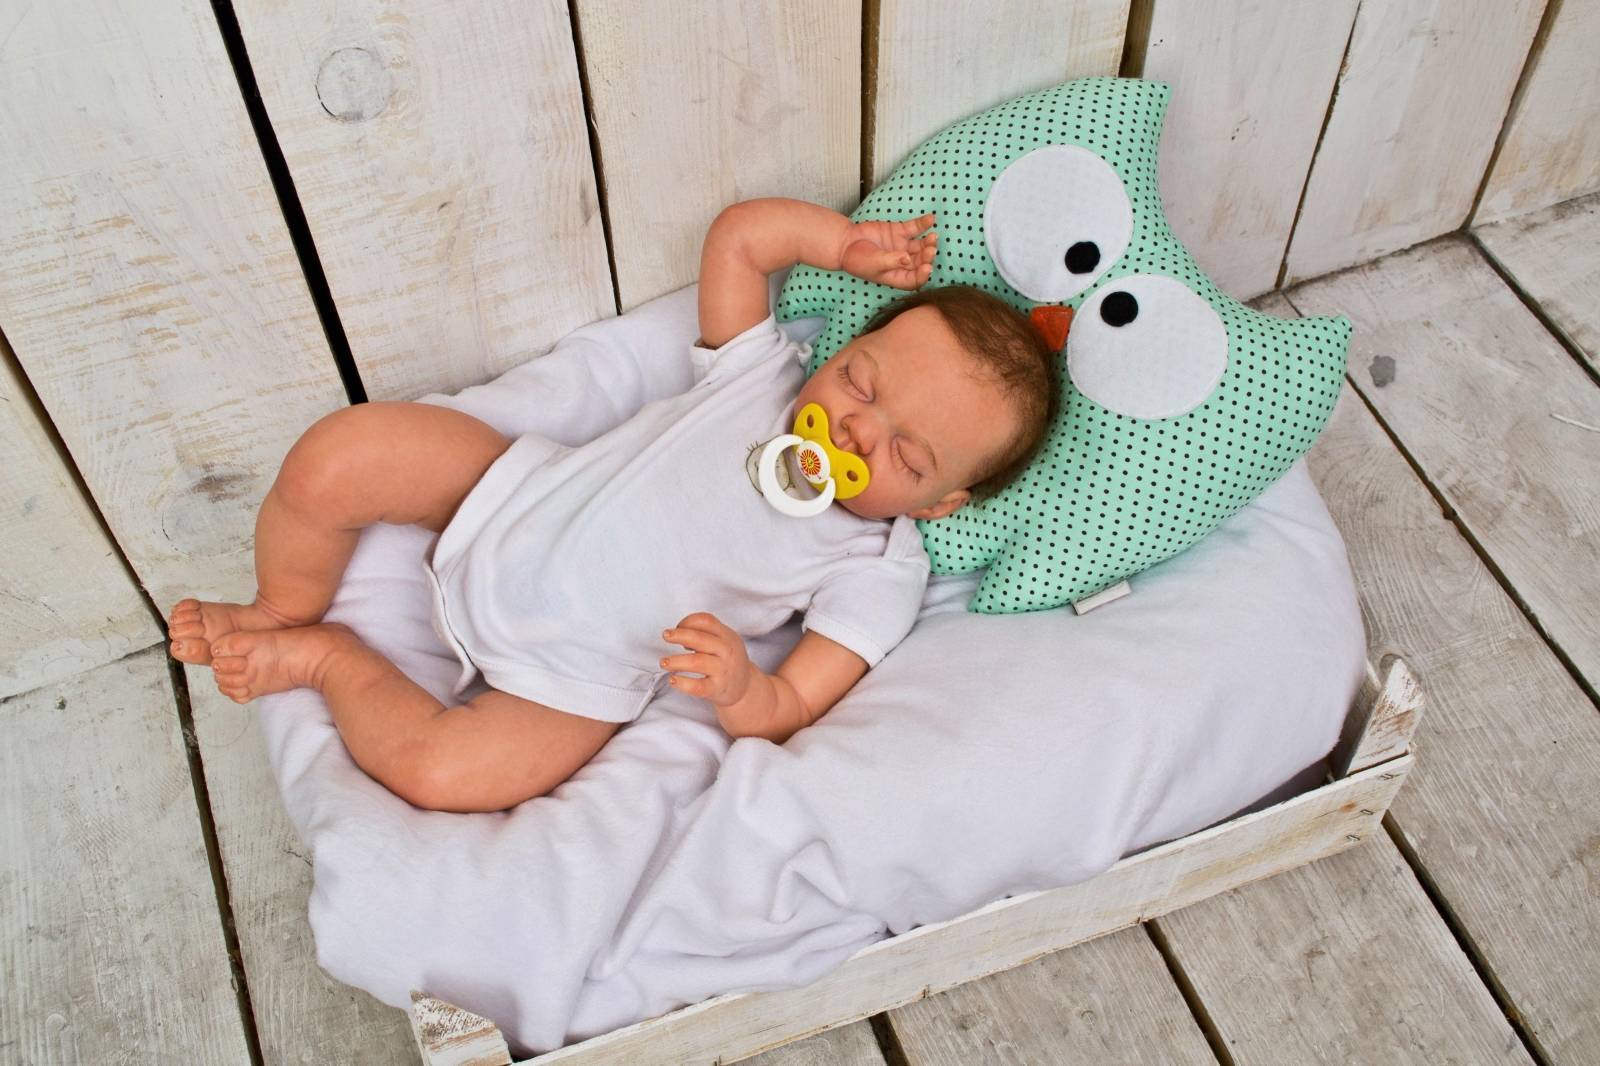 Ваш ребёнок спит на подушке? - болталка для мамочек малышей до двух лет - страна мам